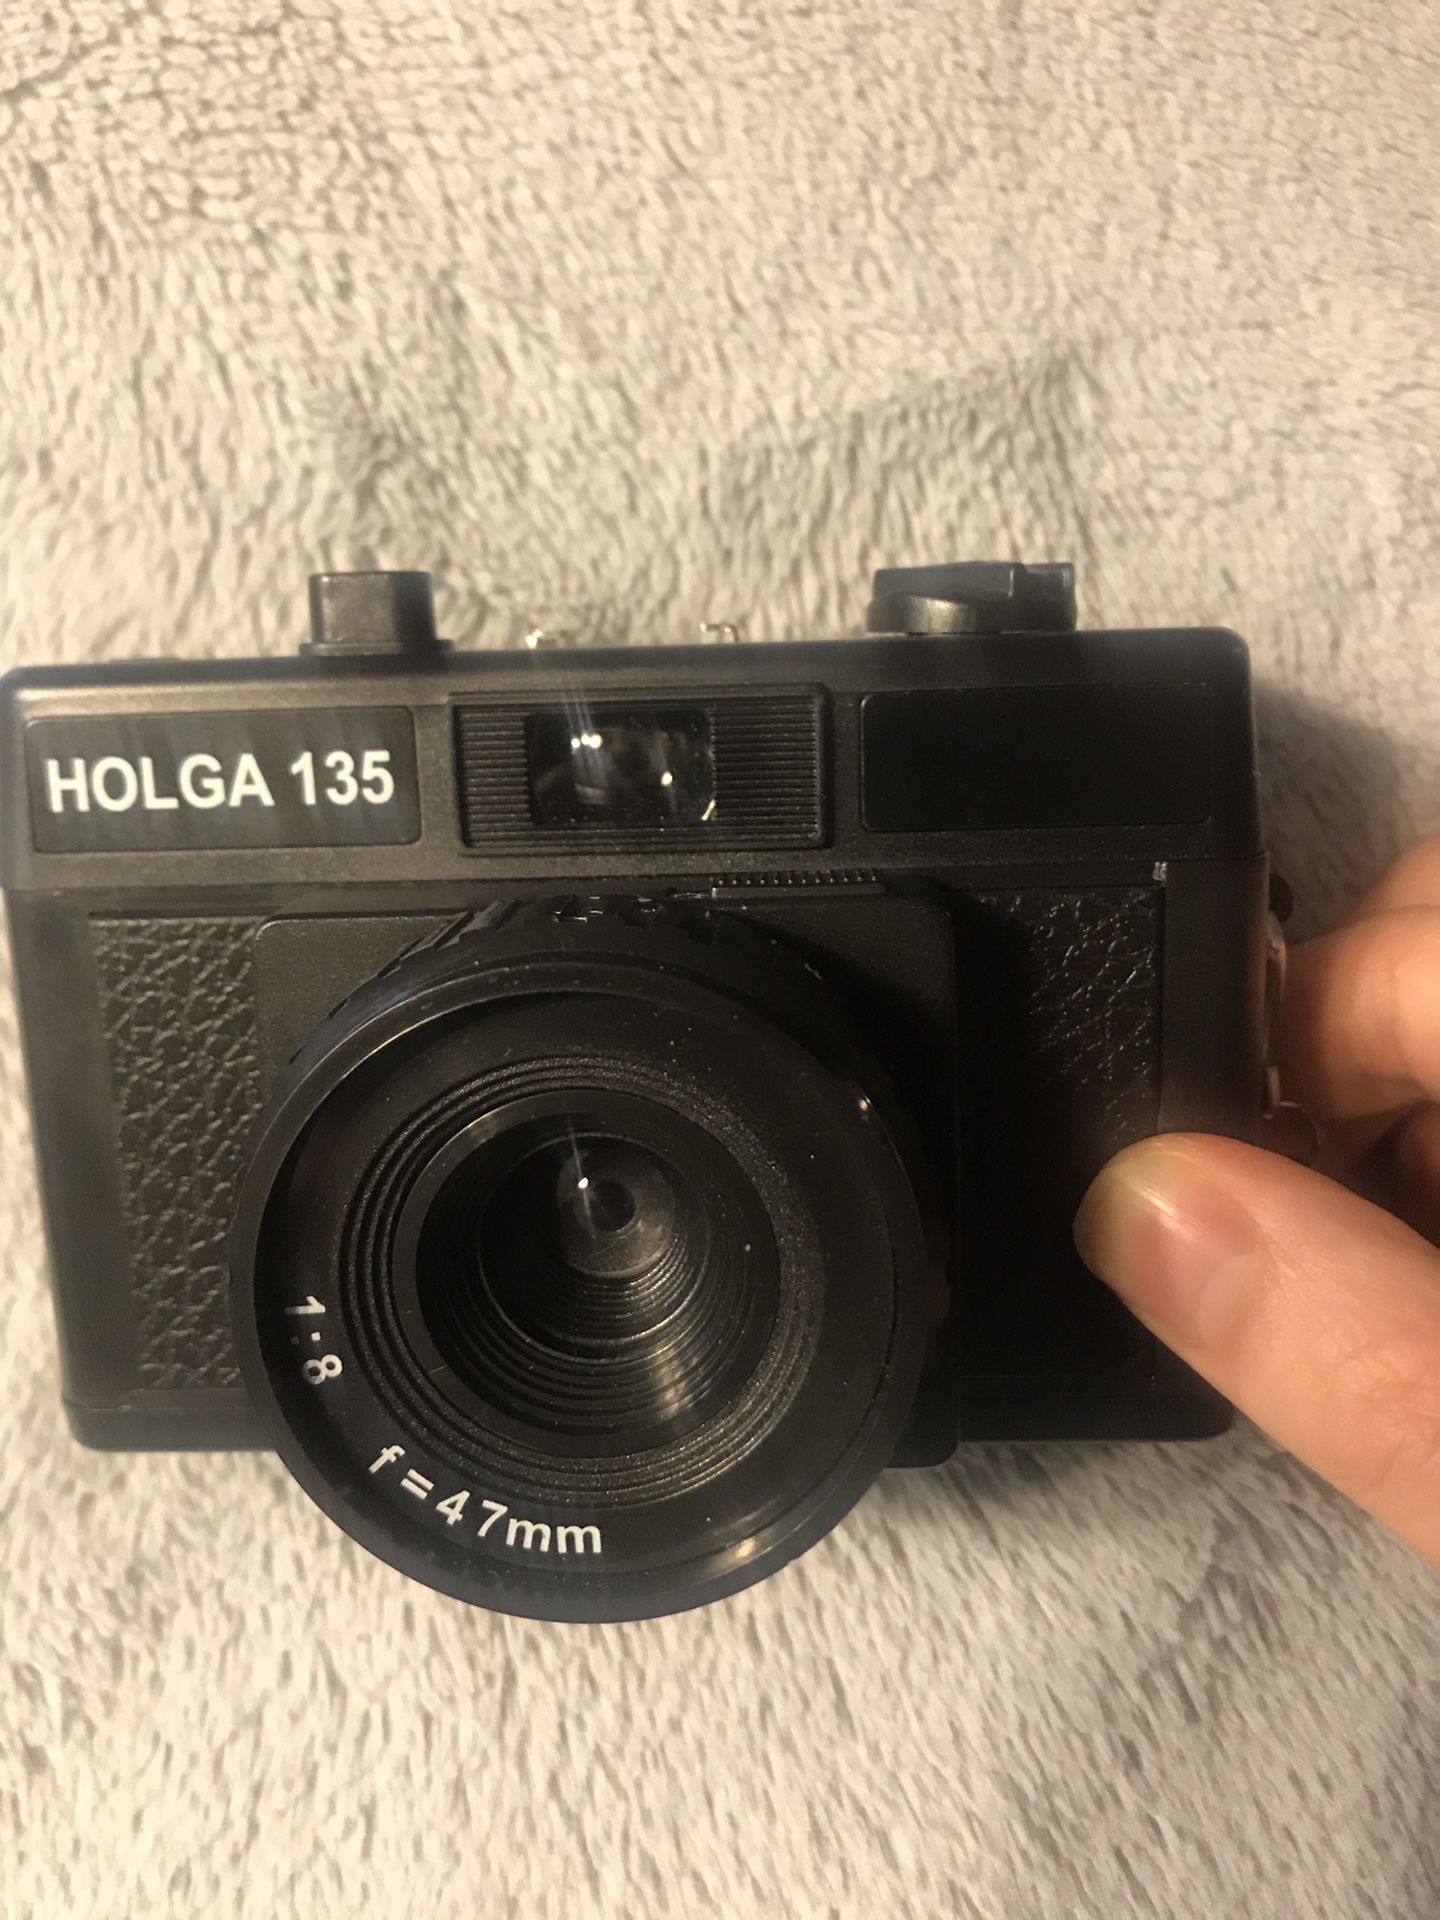 Holga 135 35mm film camera ultra light weight and streamlined